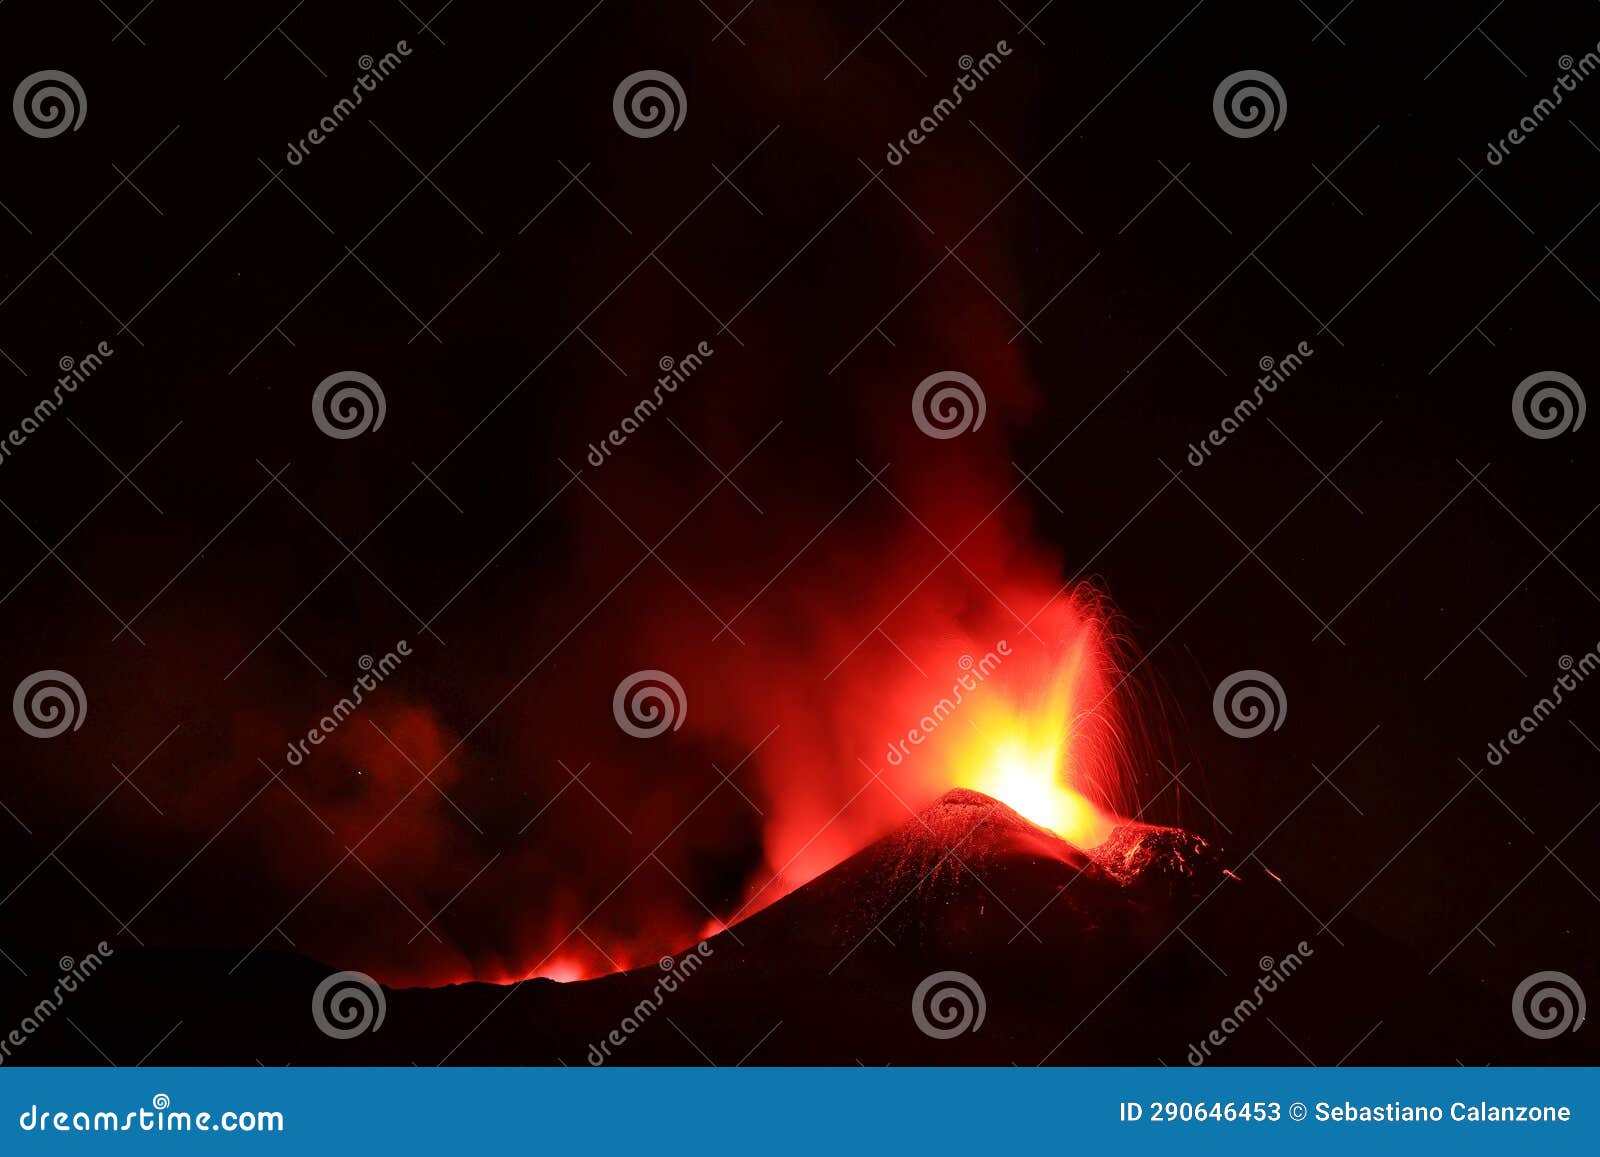 panoramica del vulcano di sicilia: etna in eruzione durante la notte con sfondo scuro del cielo notturno